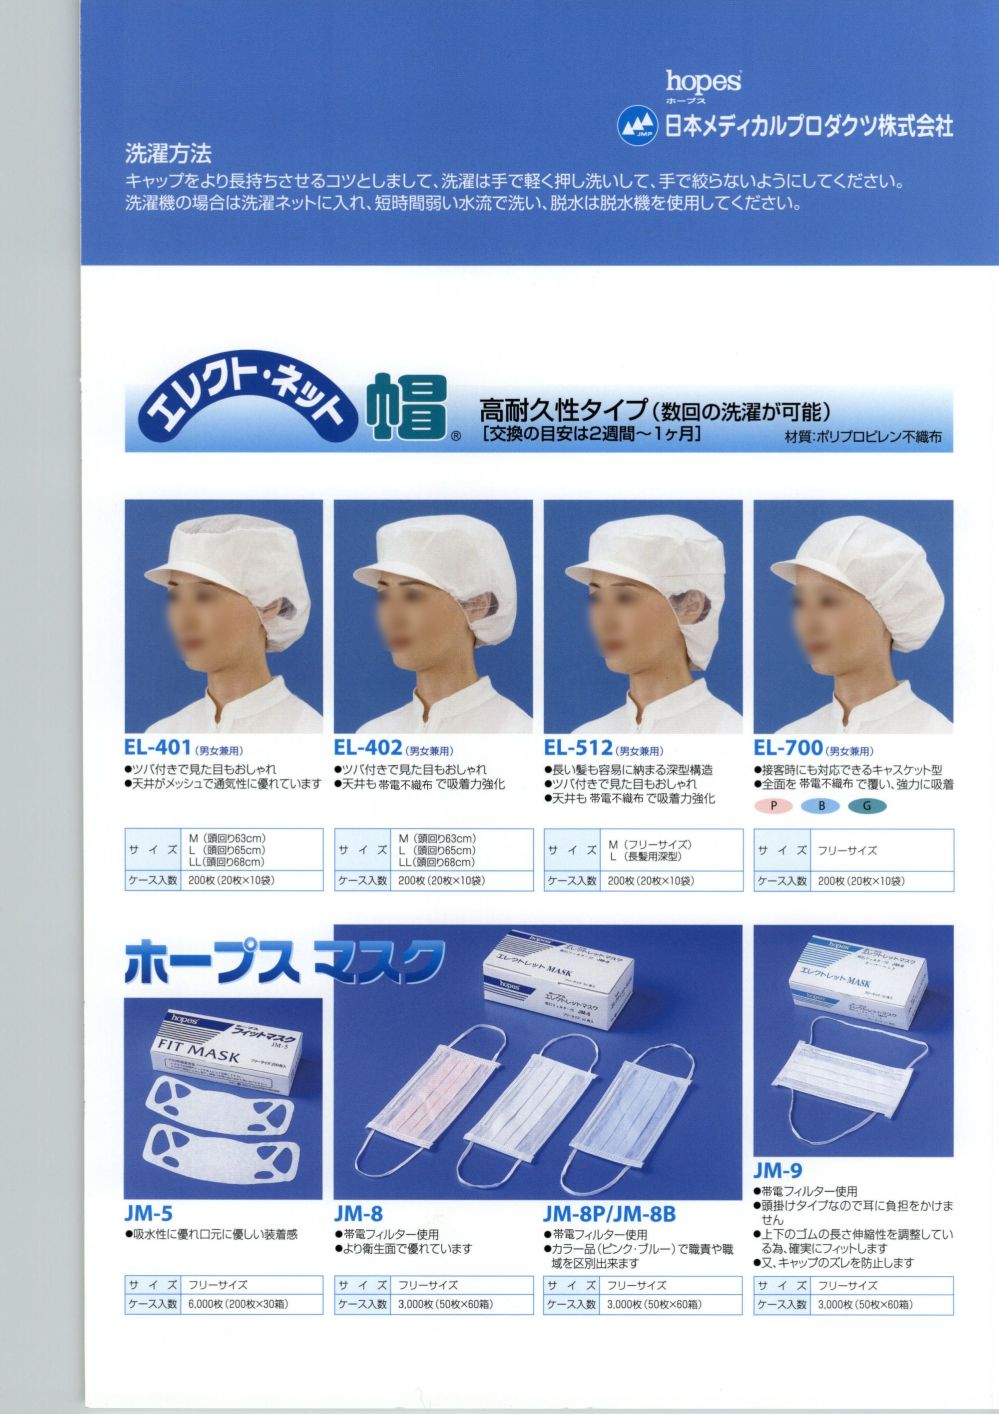 あなたにおすすめの商品 つくつく帽子 EL-102 M ピンク 日本メディカルプロダクツ 00669821